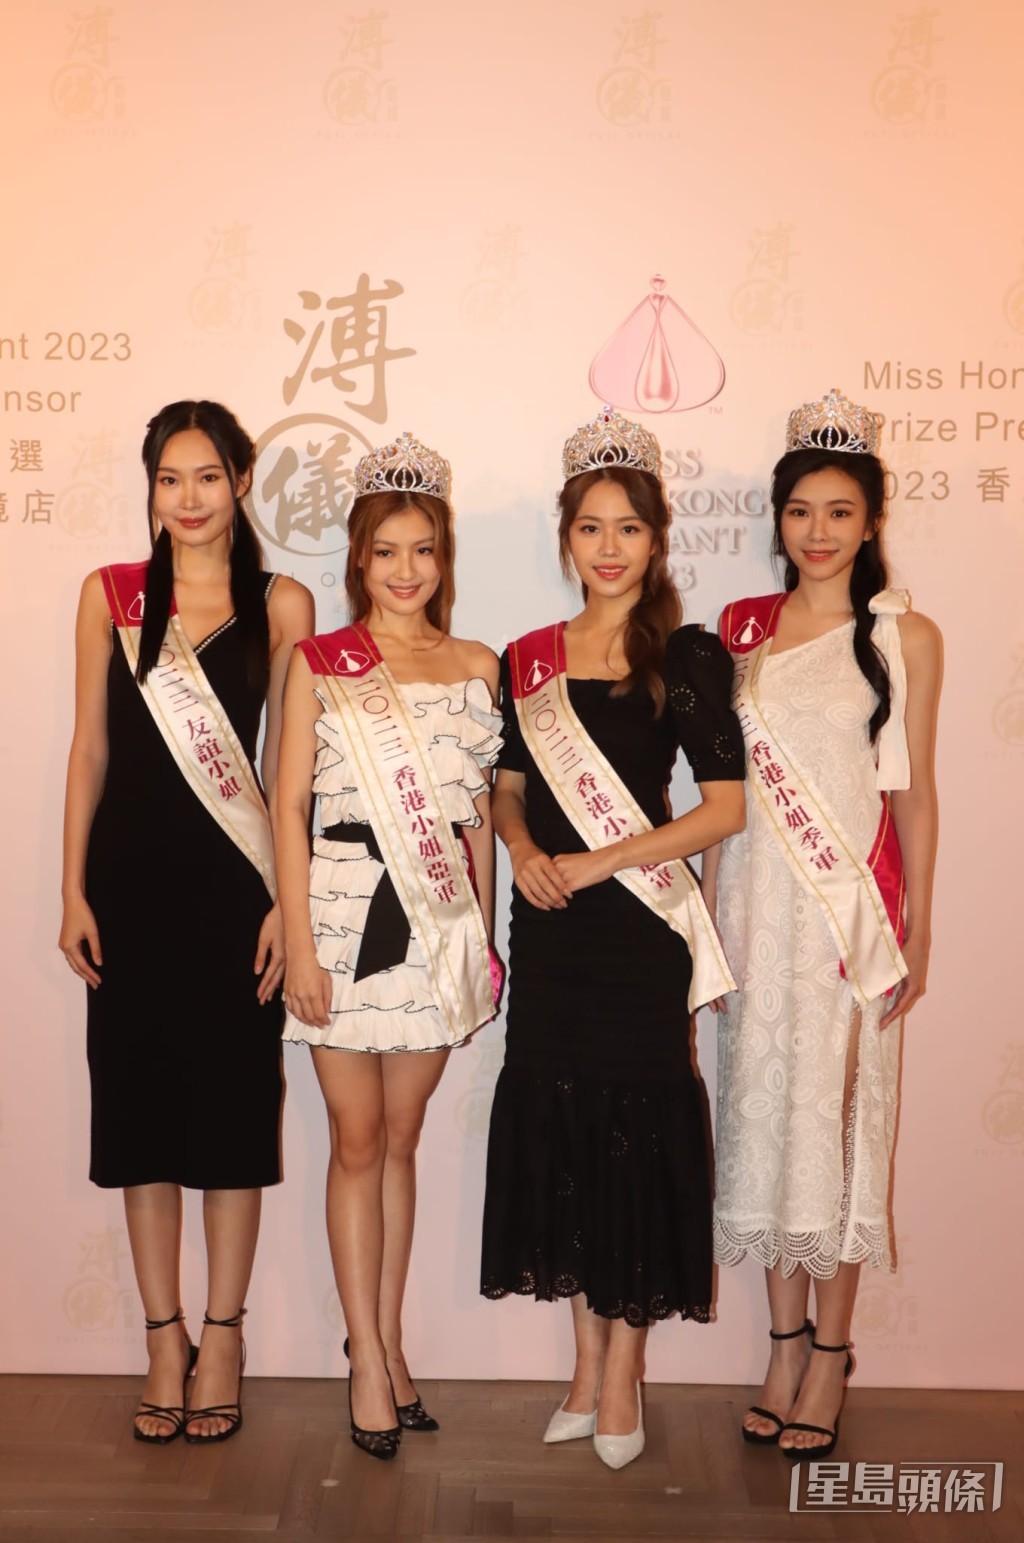 （左起）「友誼小姐」姜依宁、亞軍王怡然、冠軍莊子璇及季軍王敏慈去年當選後出席活動。